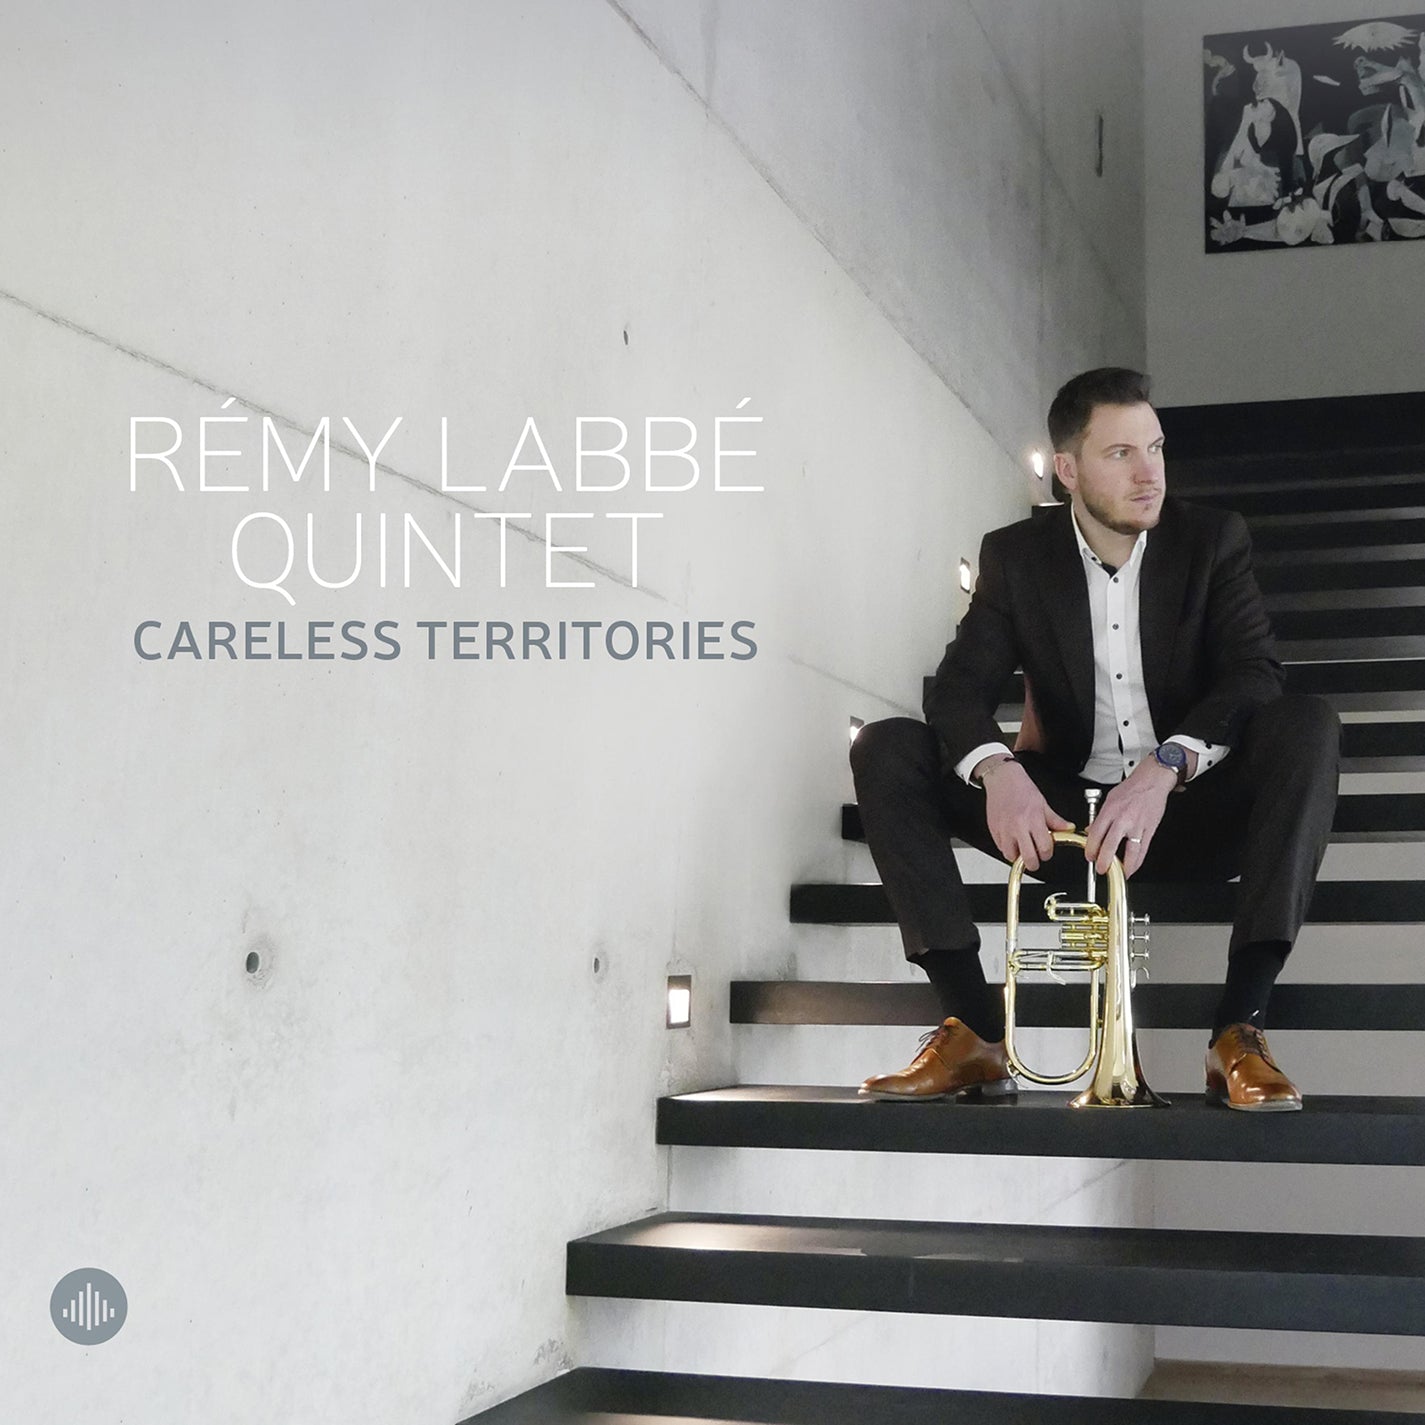 Careless Territories / Rémy Labbé Quintet